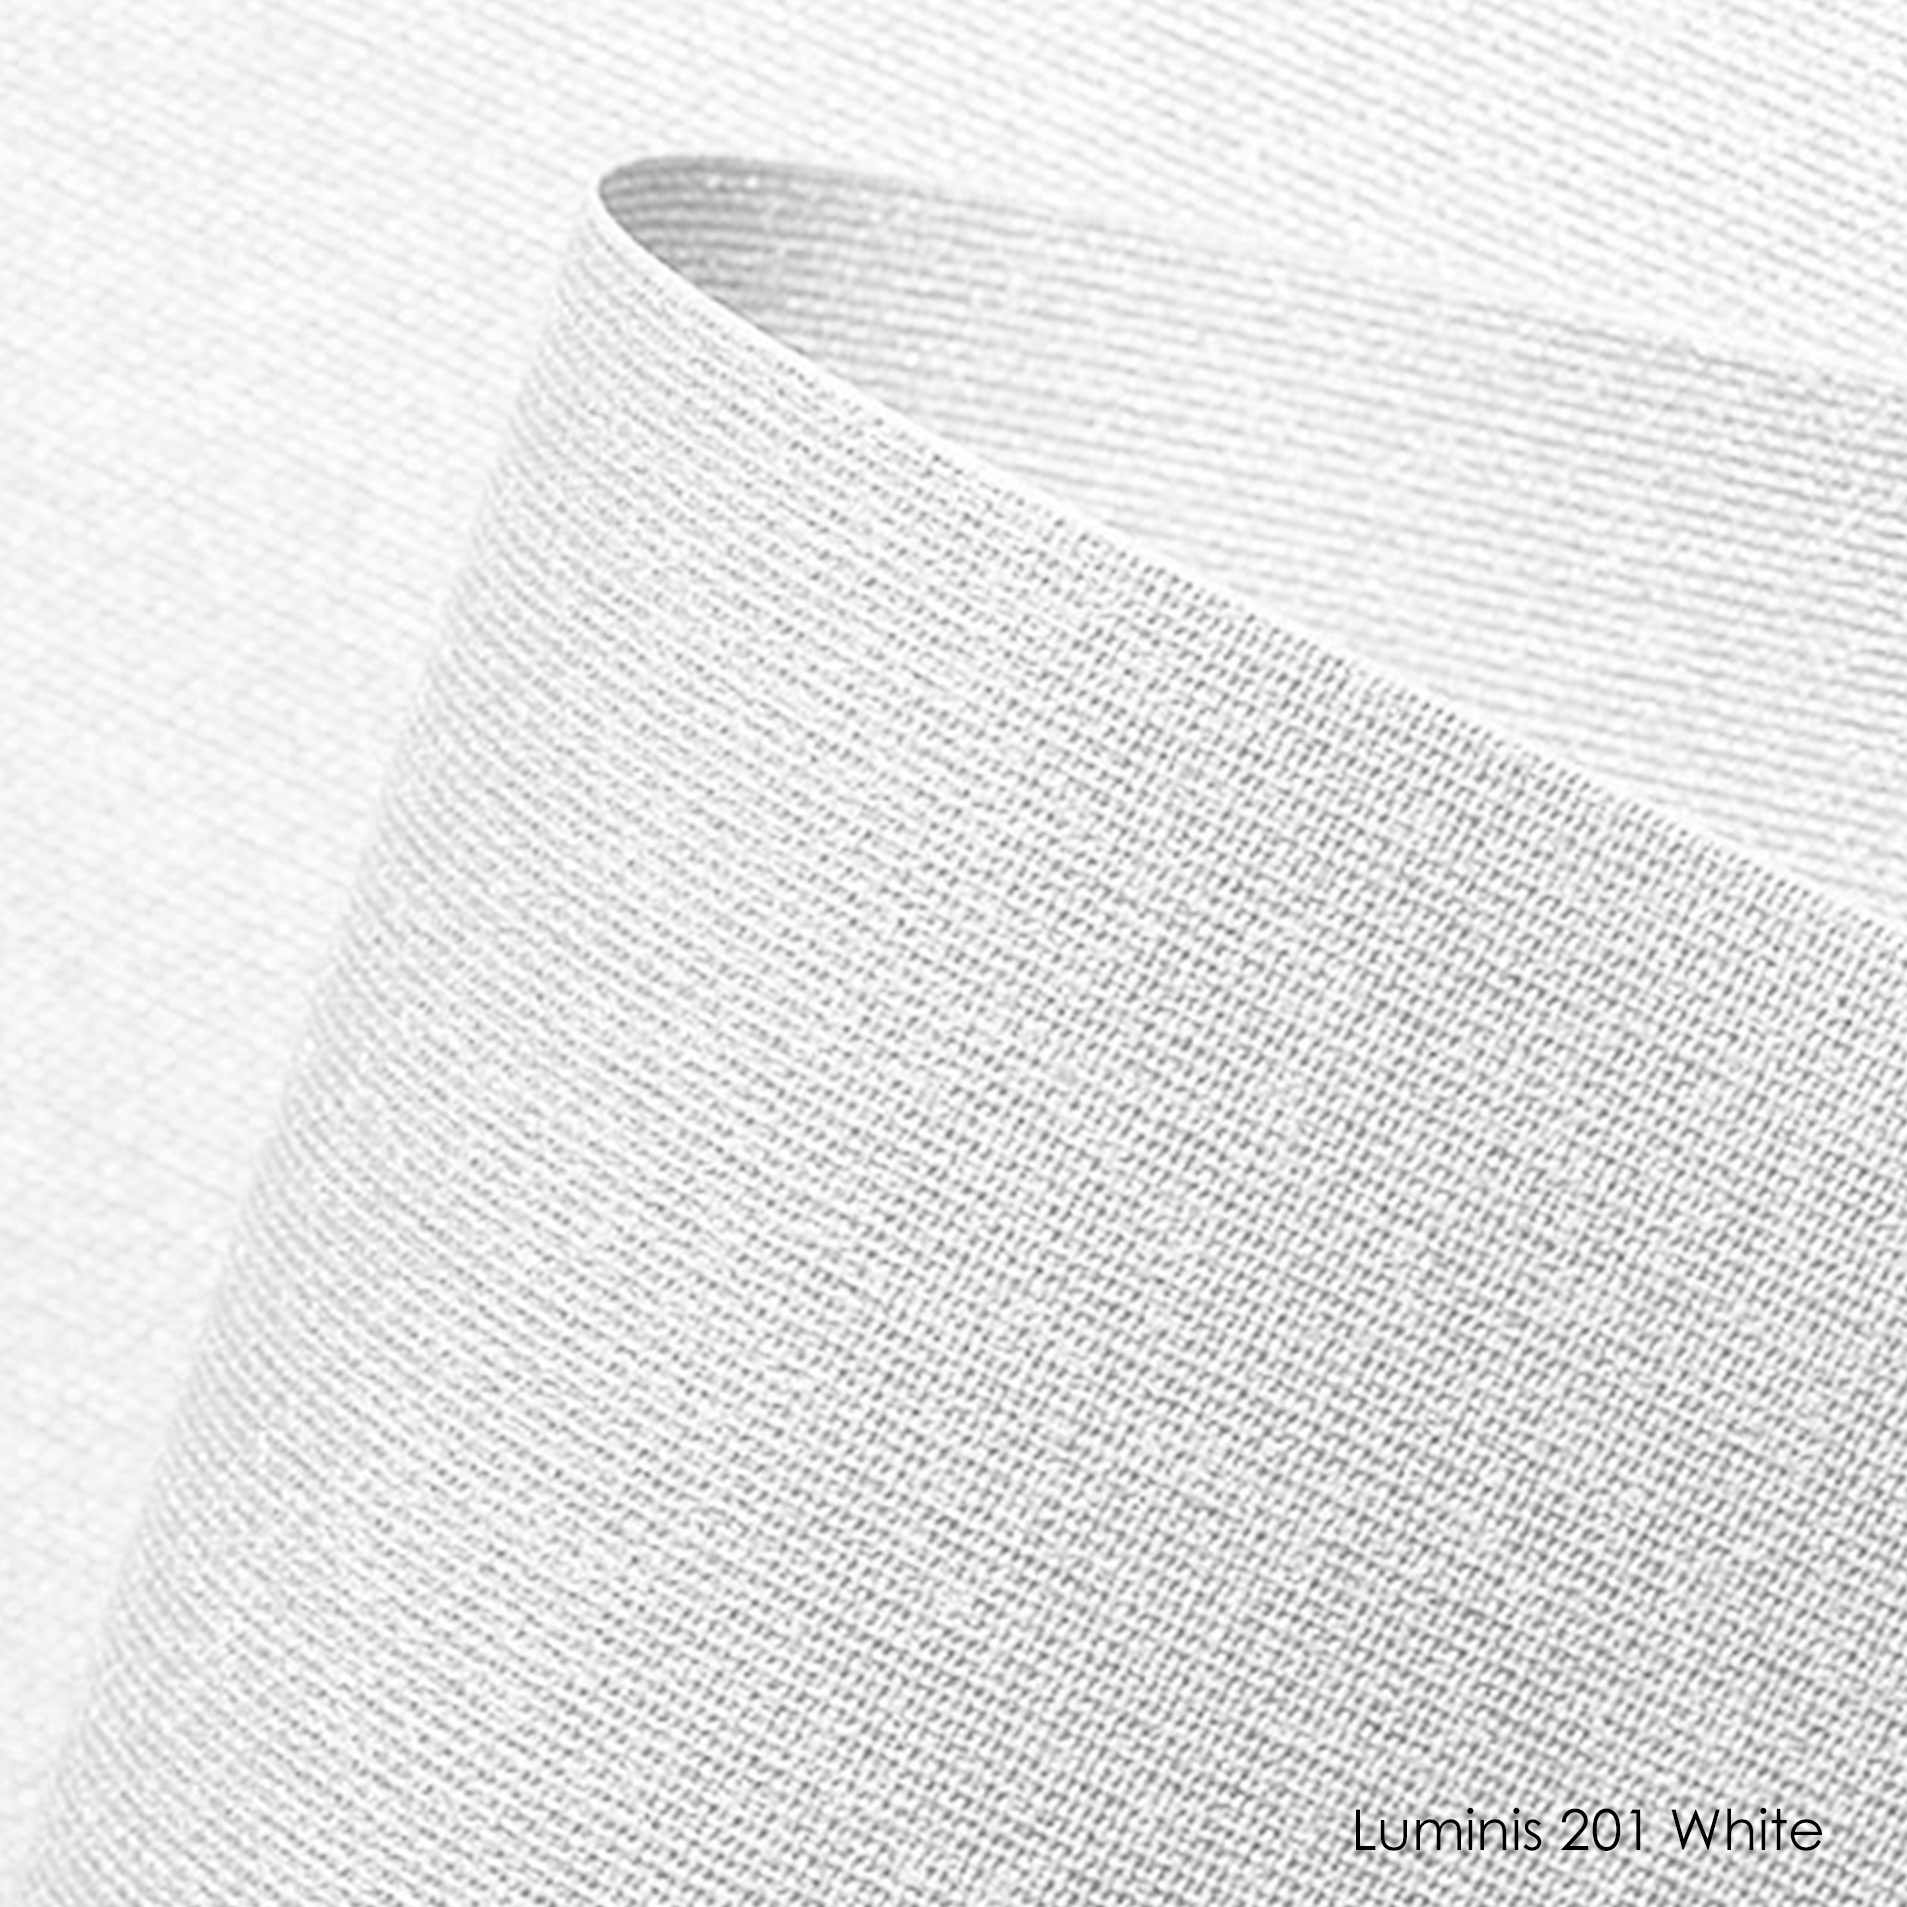 luminis-201 white